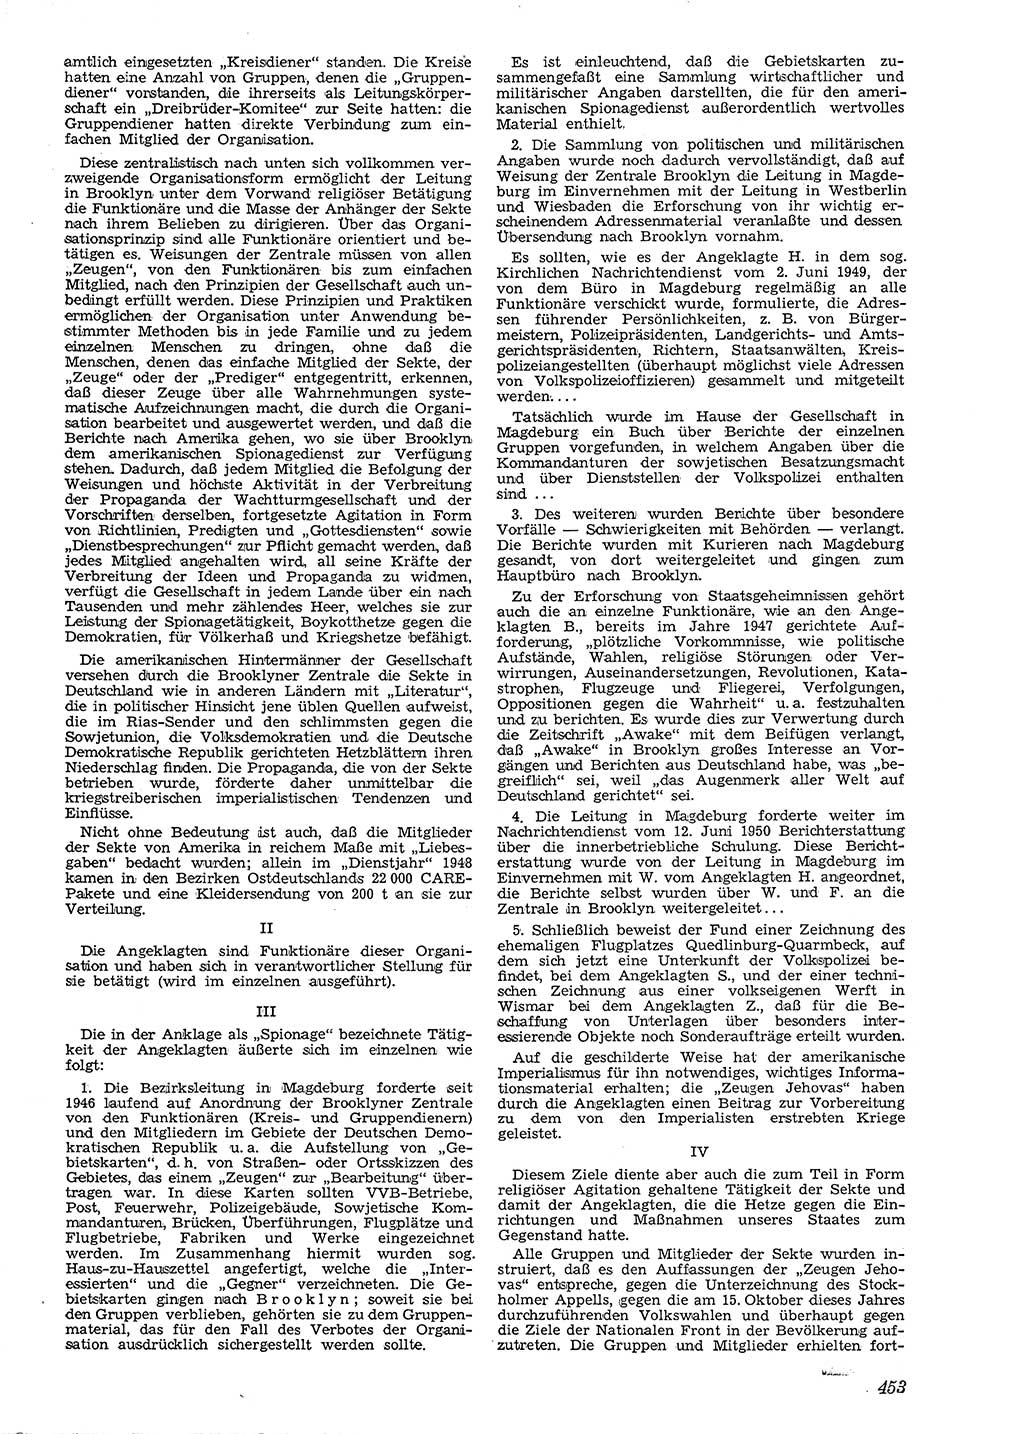 Neue Justiz (NJ), Zeitschrift für Recht und Rechtswissenschaft [Deutsche Demokratische Republik (DDR)], 4. Jahrgang 1950, Seite 453 (NJ DDR 1950, S. 453)